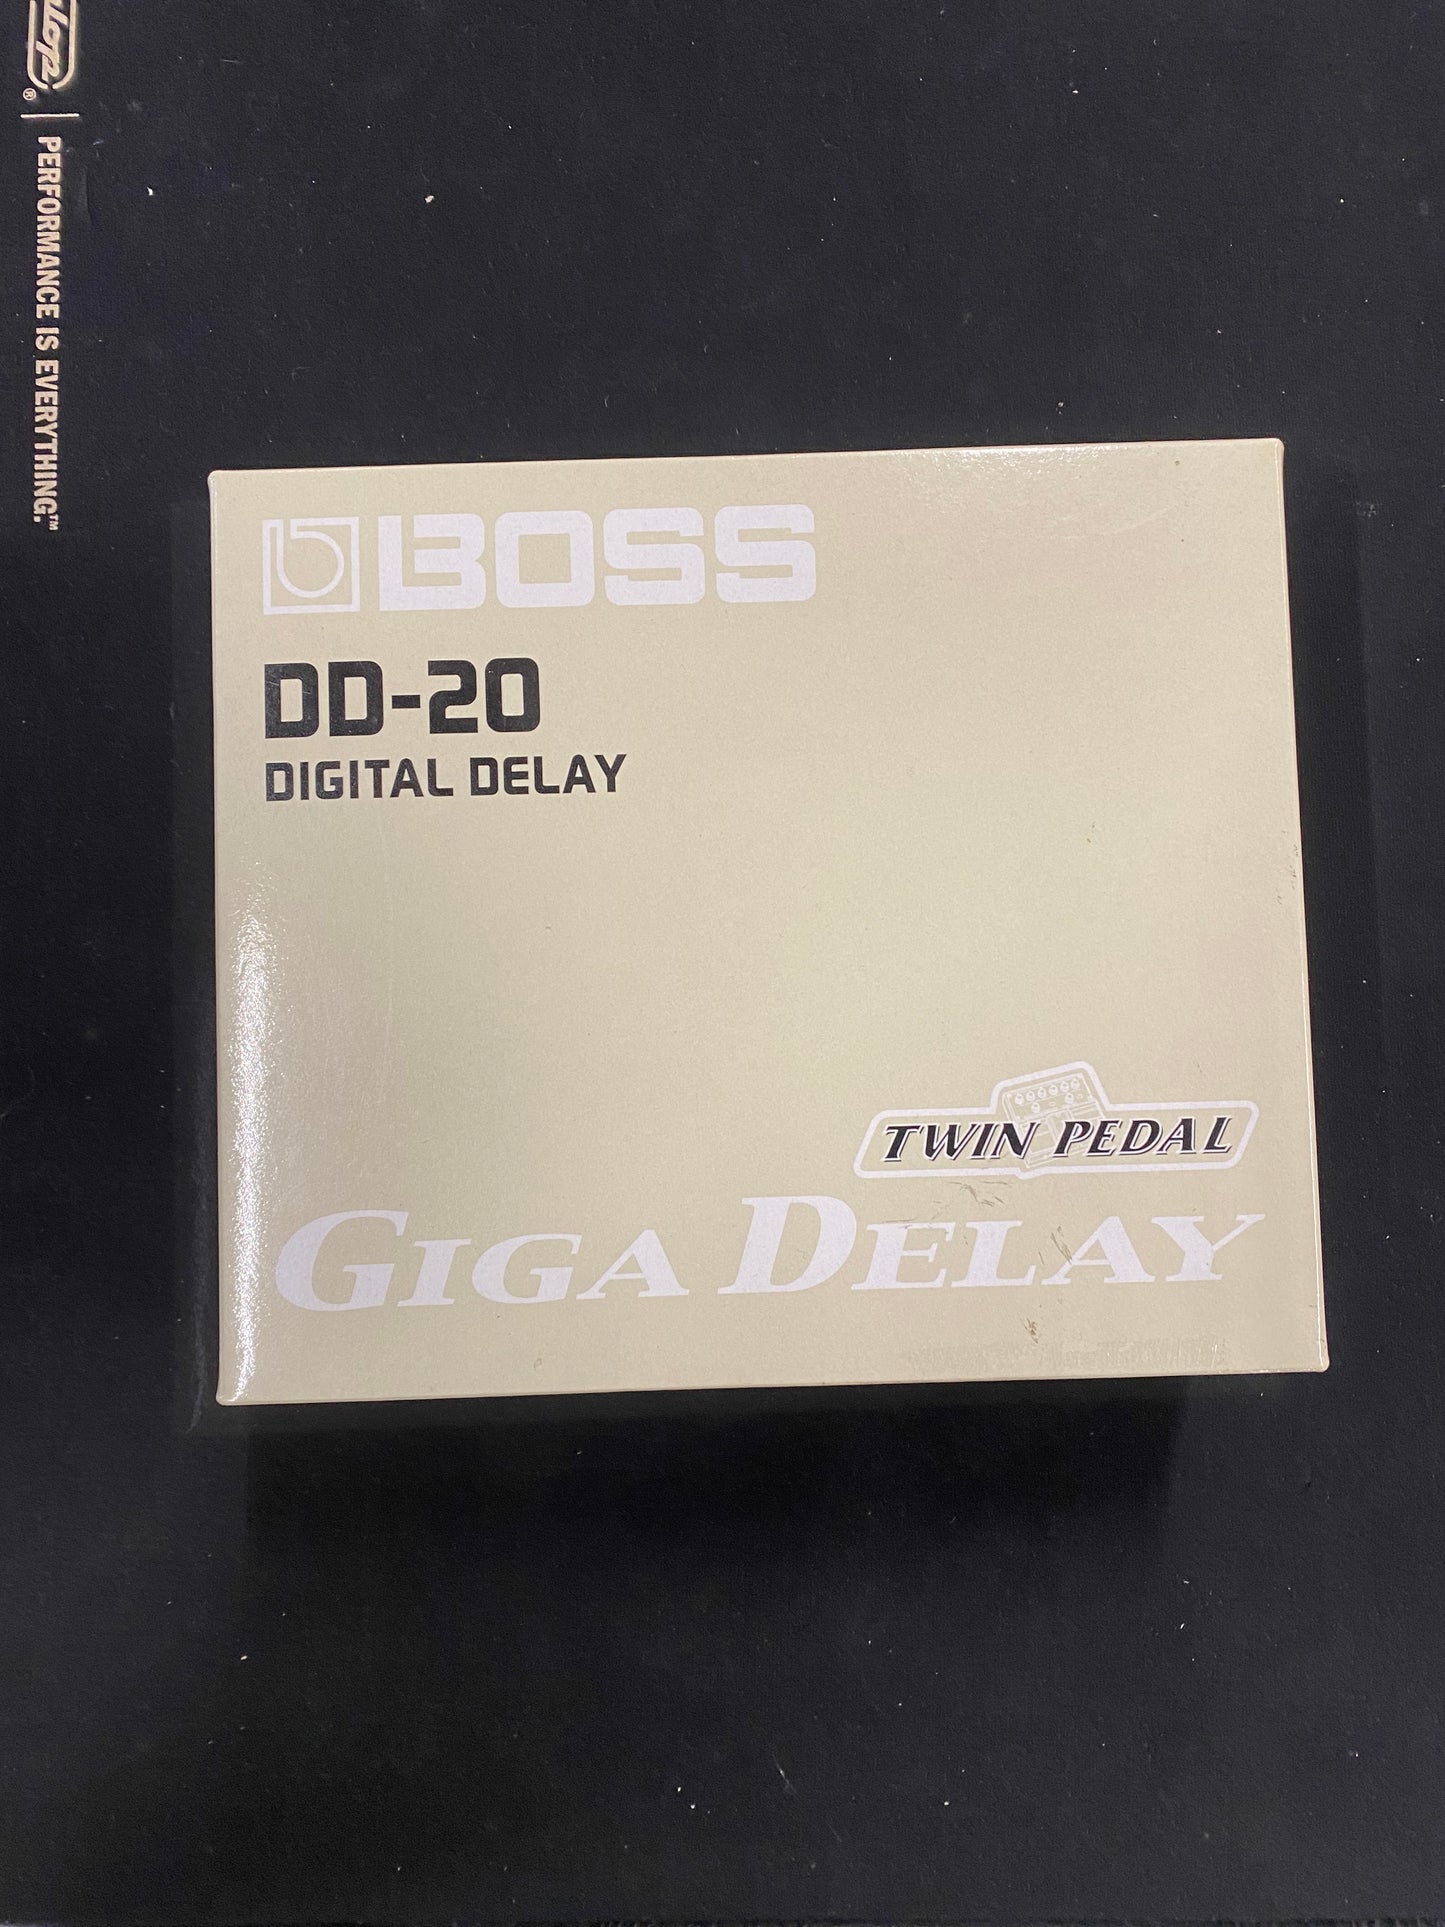 Boss DD-20 Giga Delay Twin Pedal Usato + Manuale istruzioni